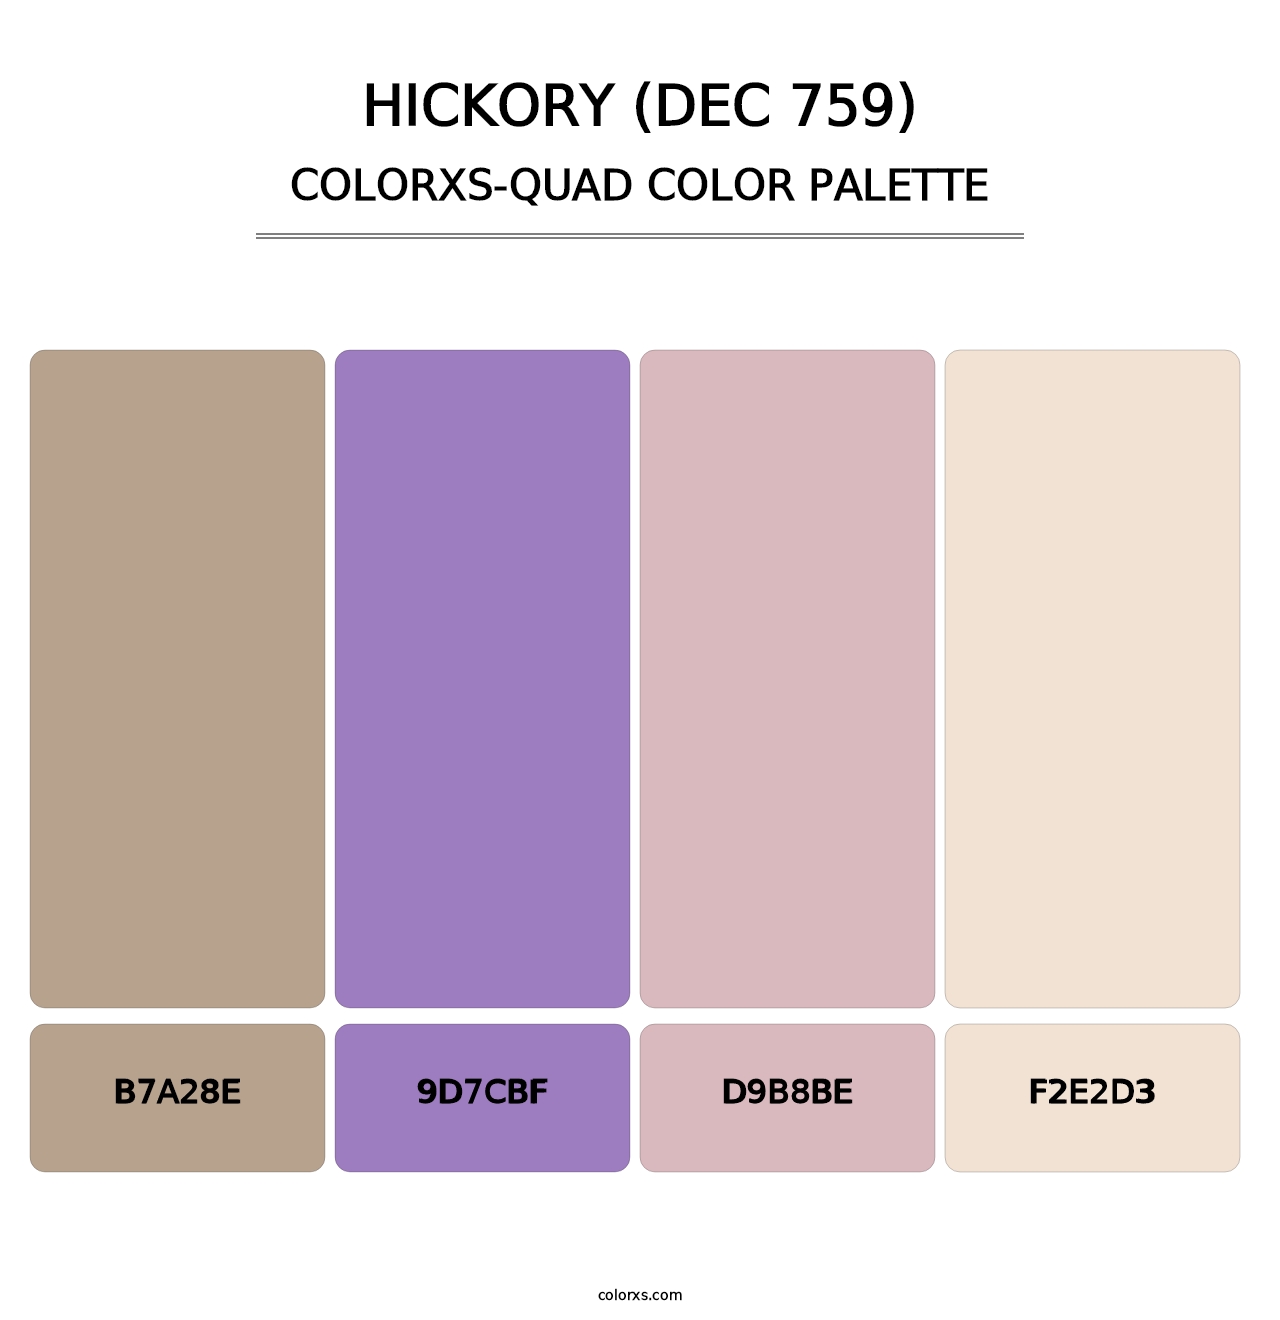 Hickory (DEC 759) - Colorxs Quad Palette